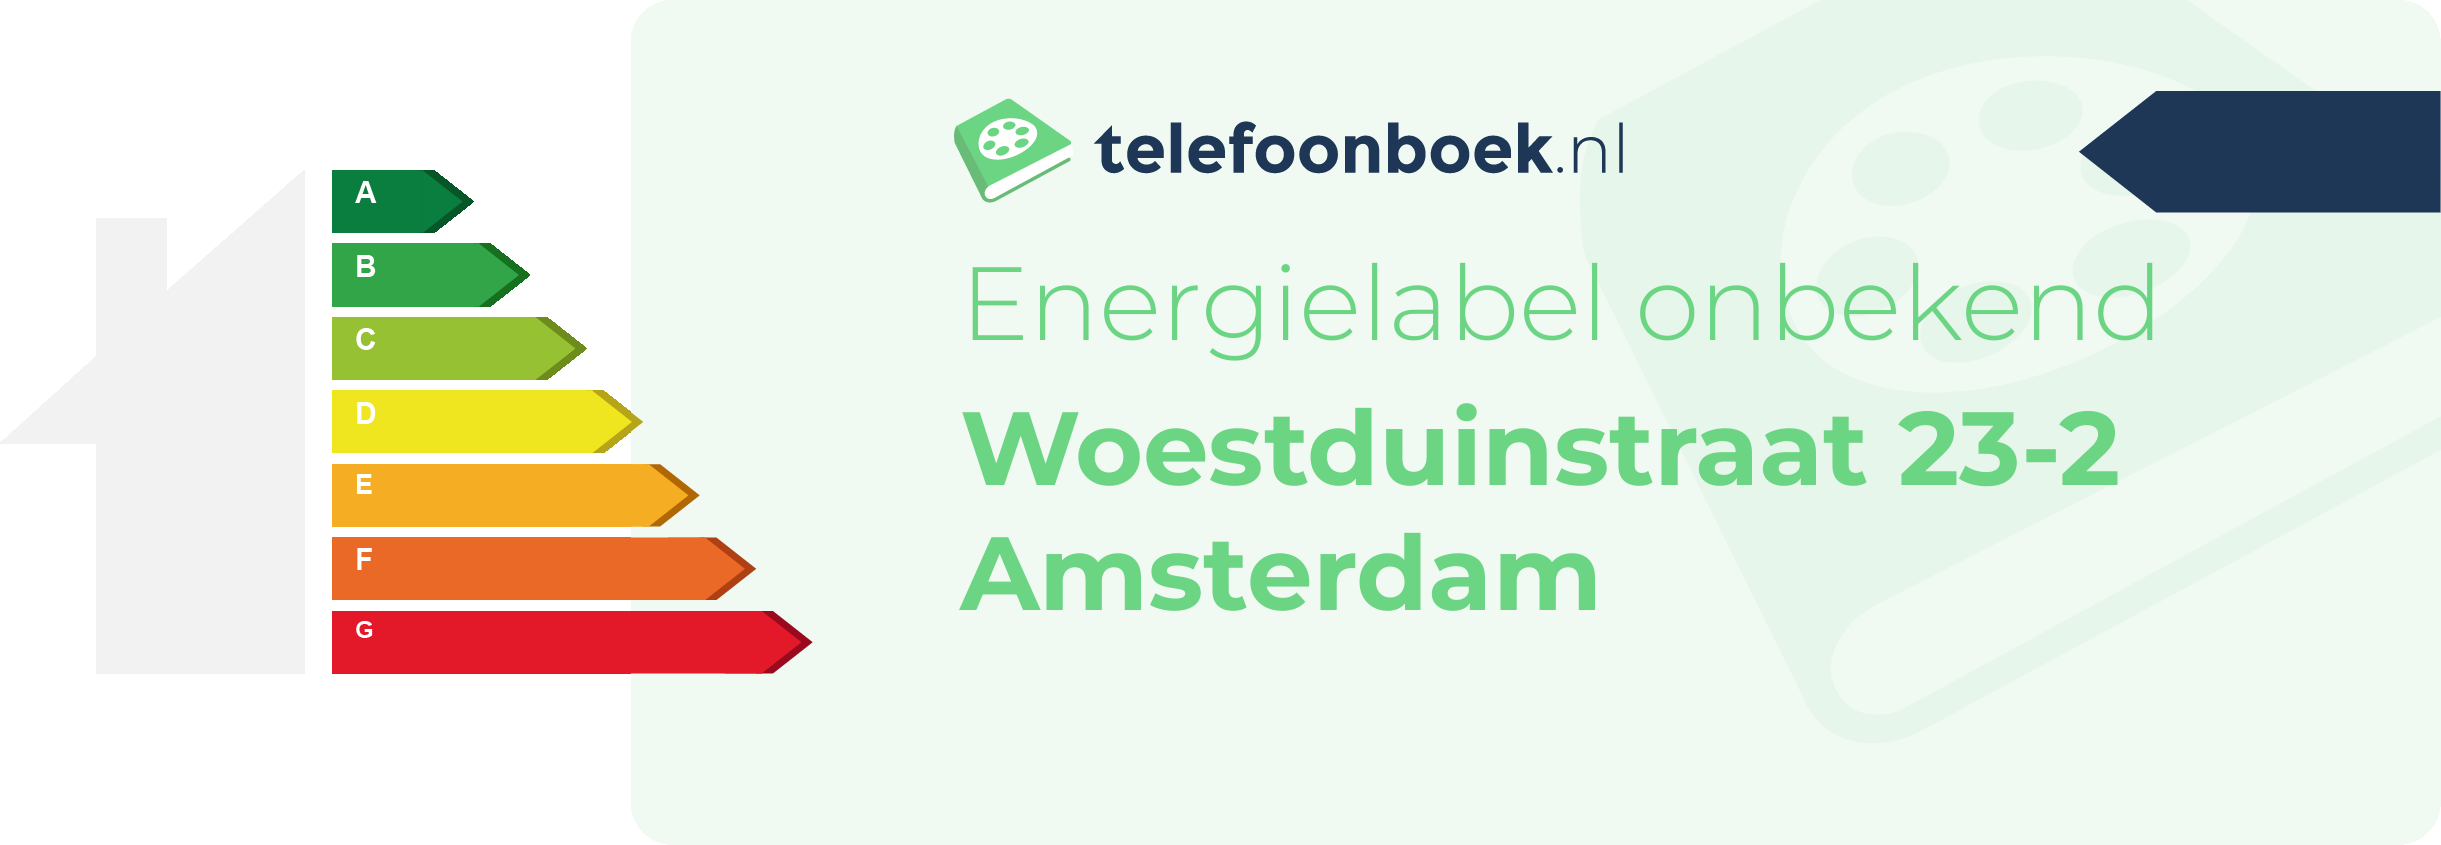 Energielabel Woestduinstraat 23-2 Amsterdam